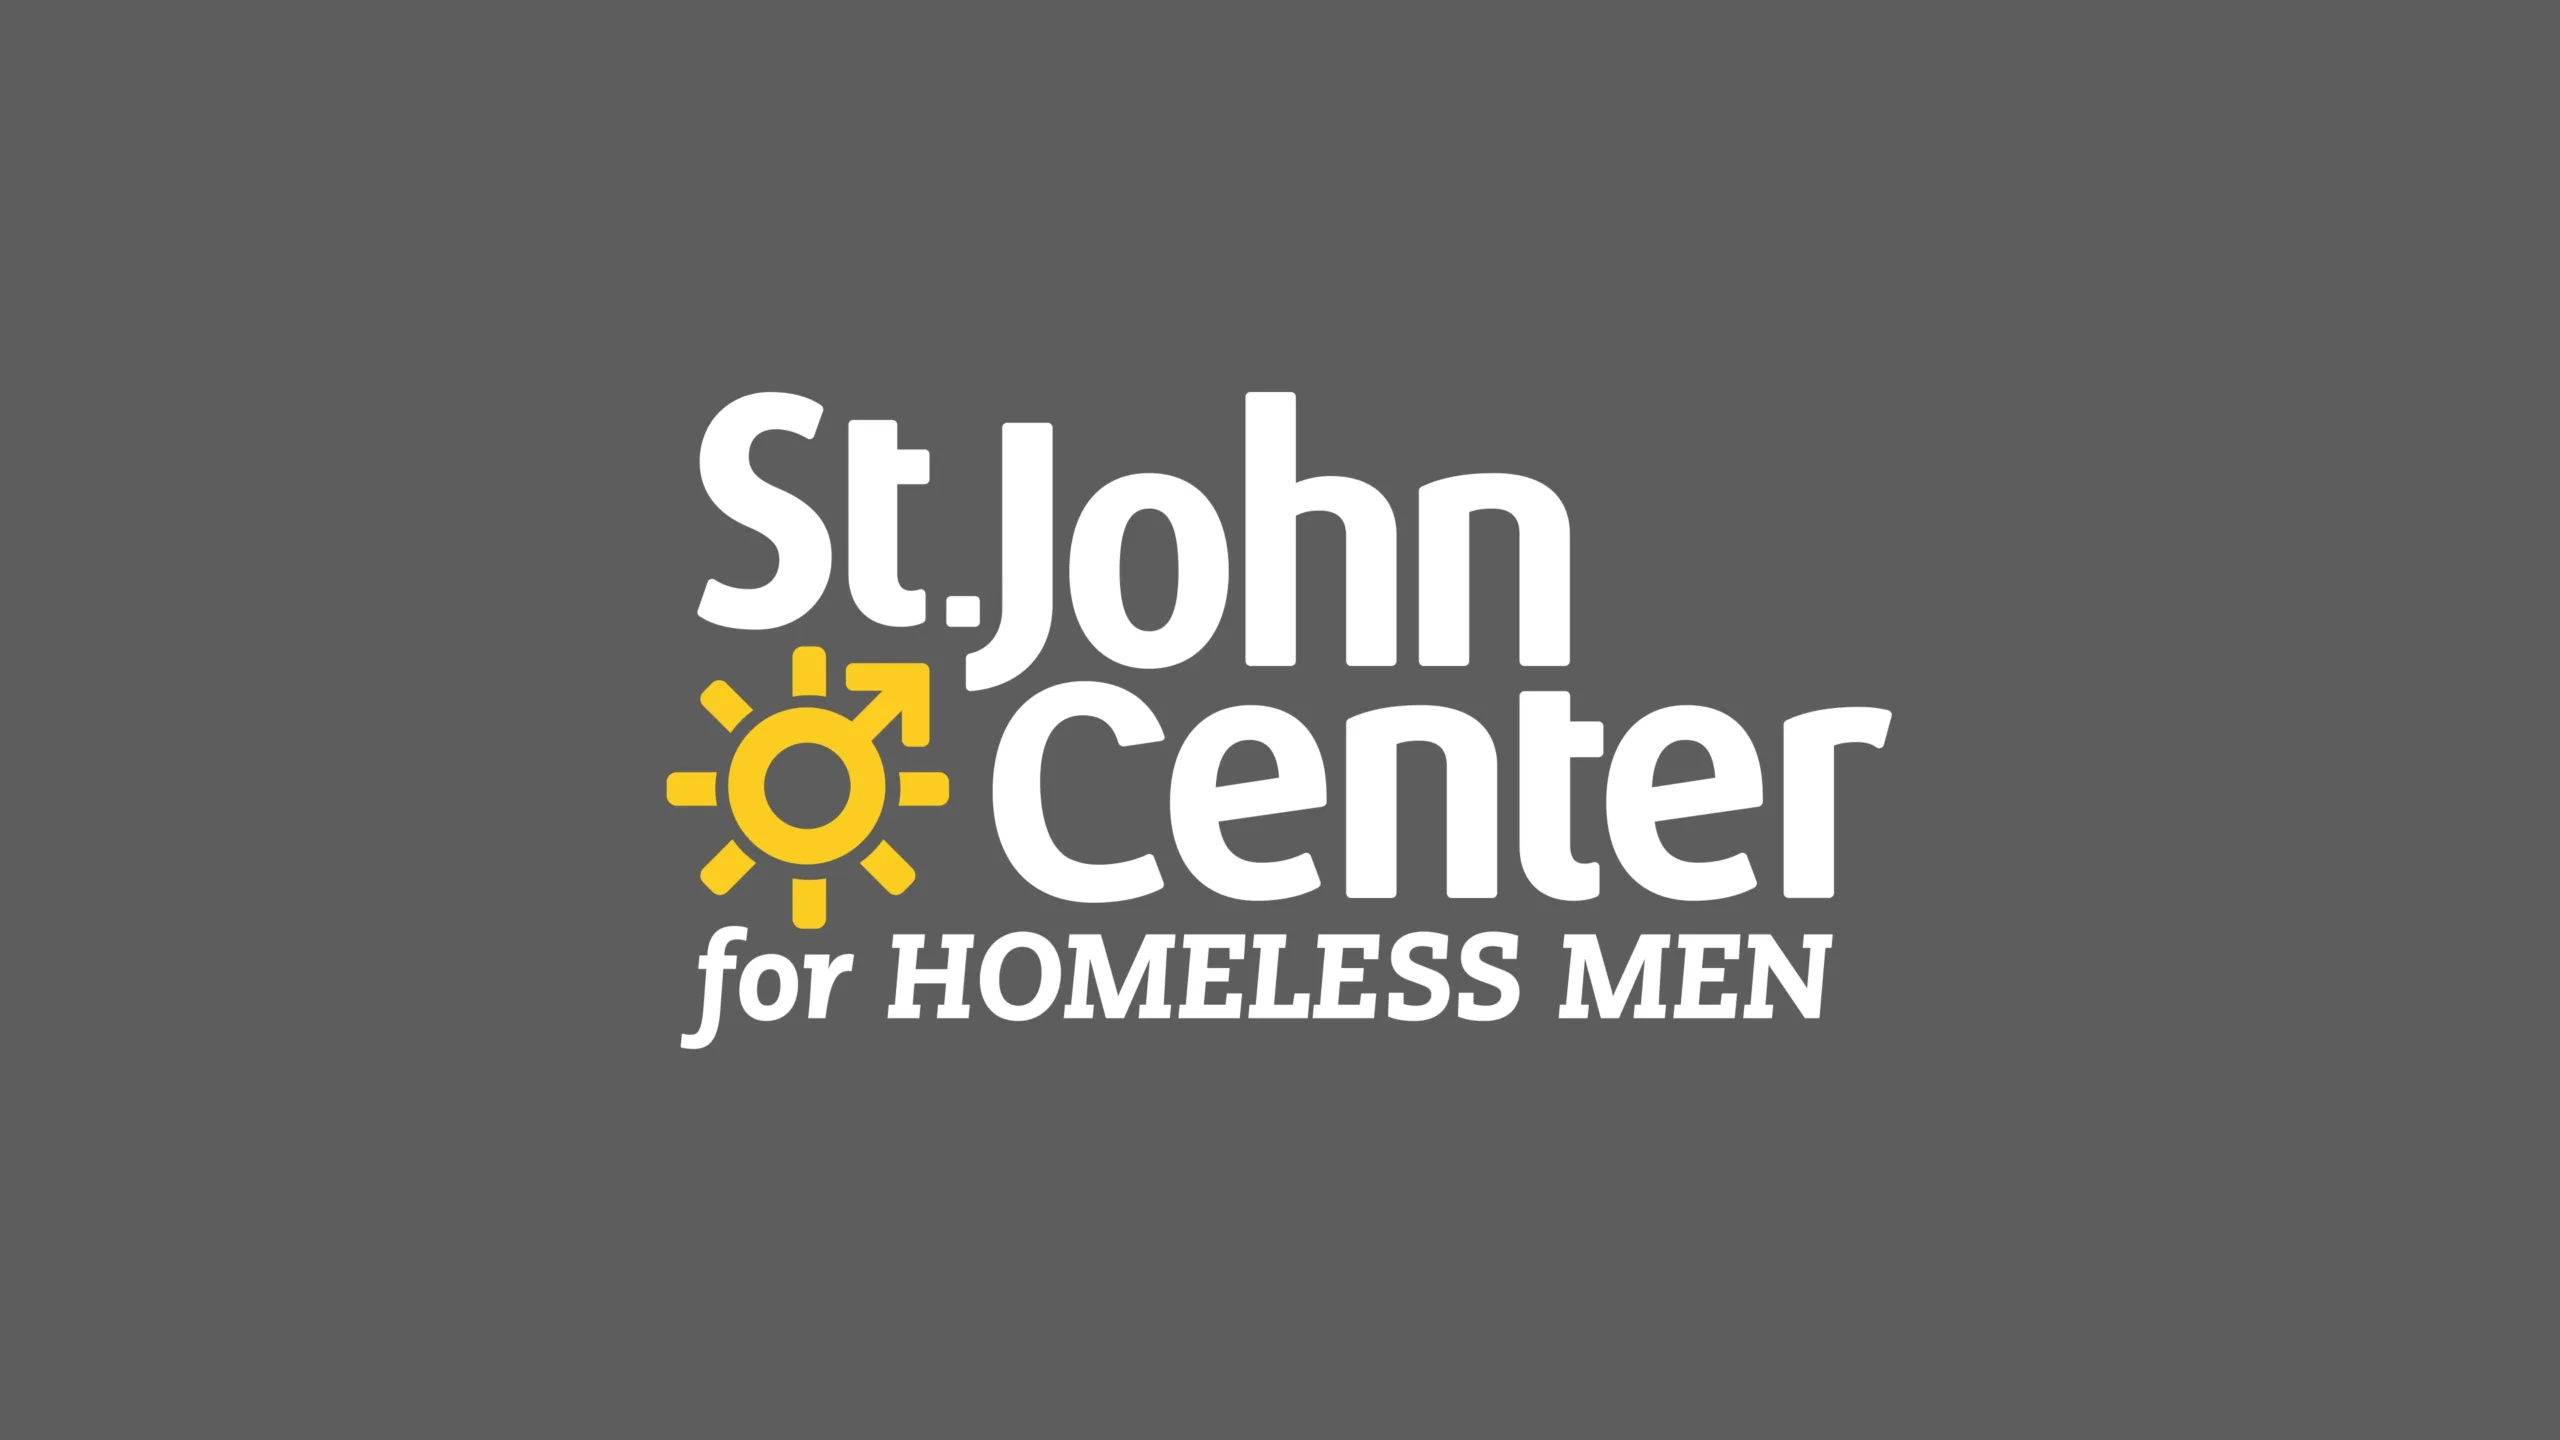 St. John Center - logo design branding